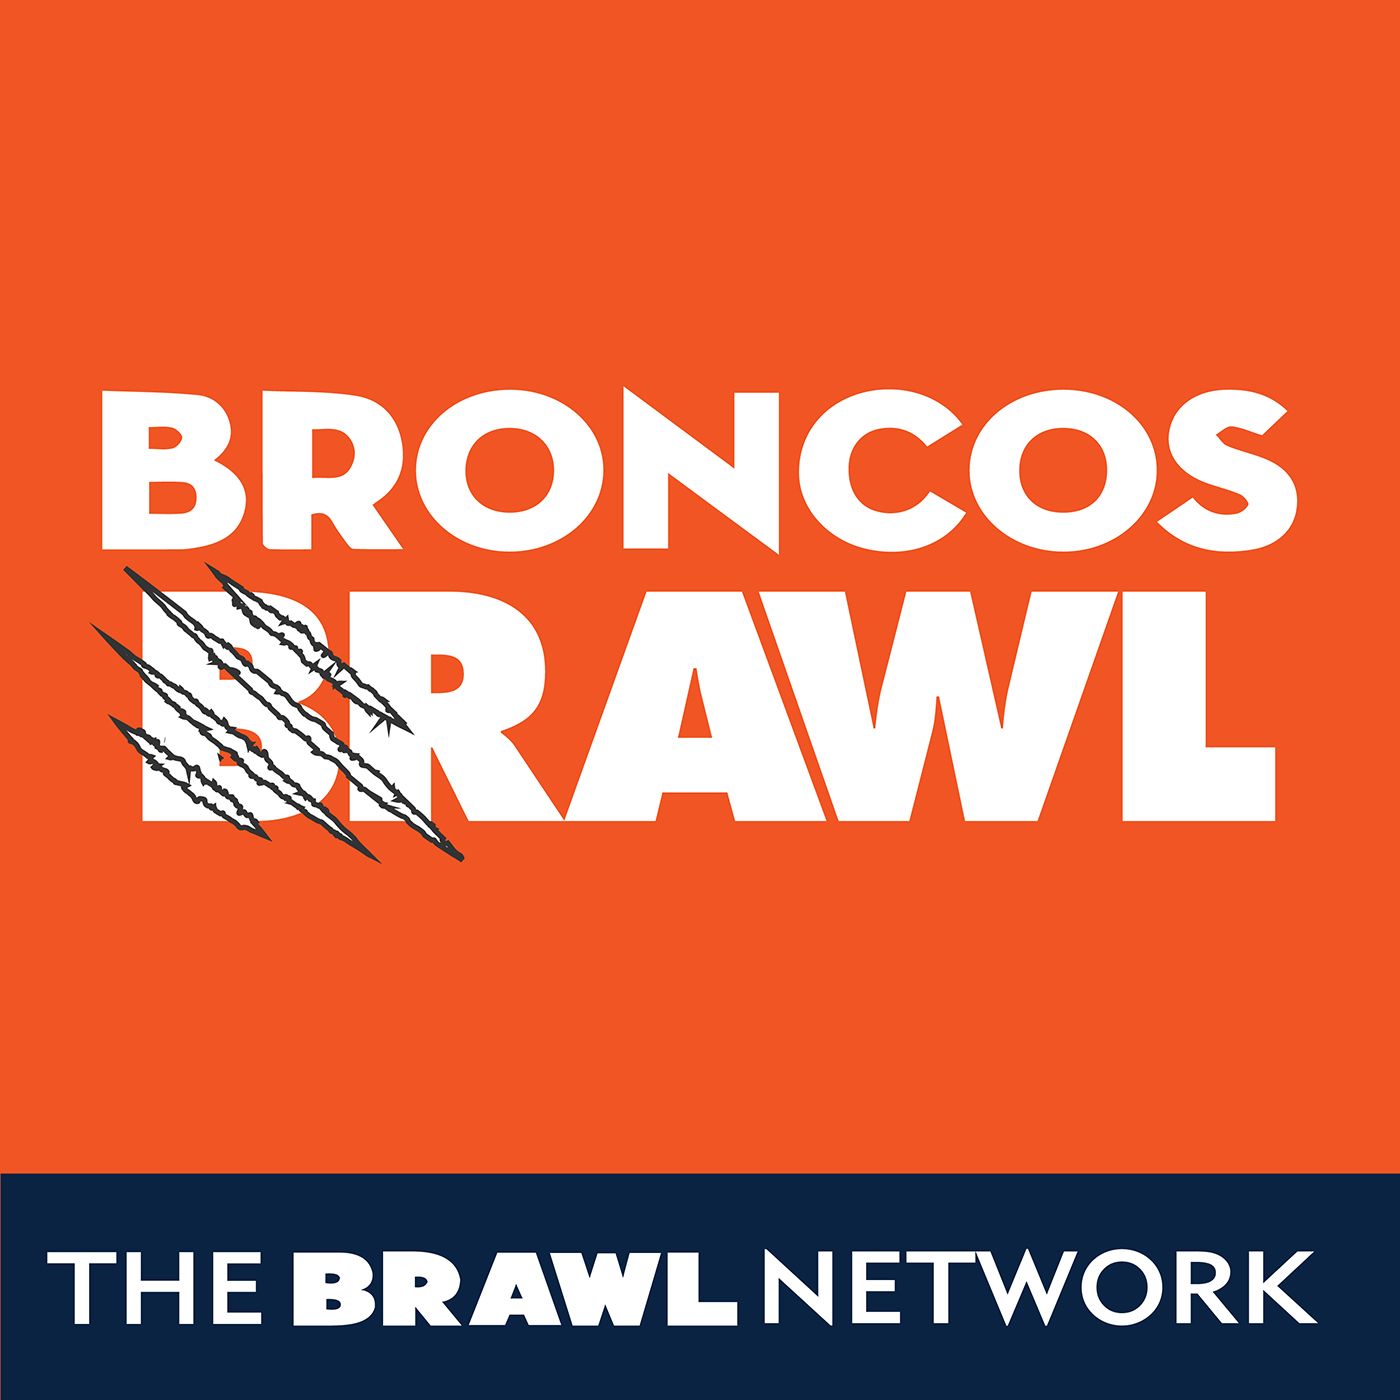 Broncos Brawl